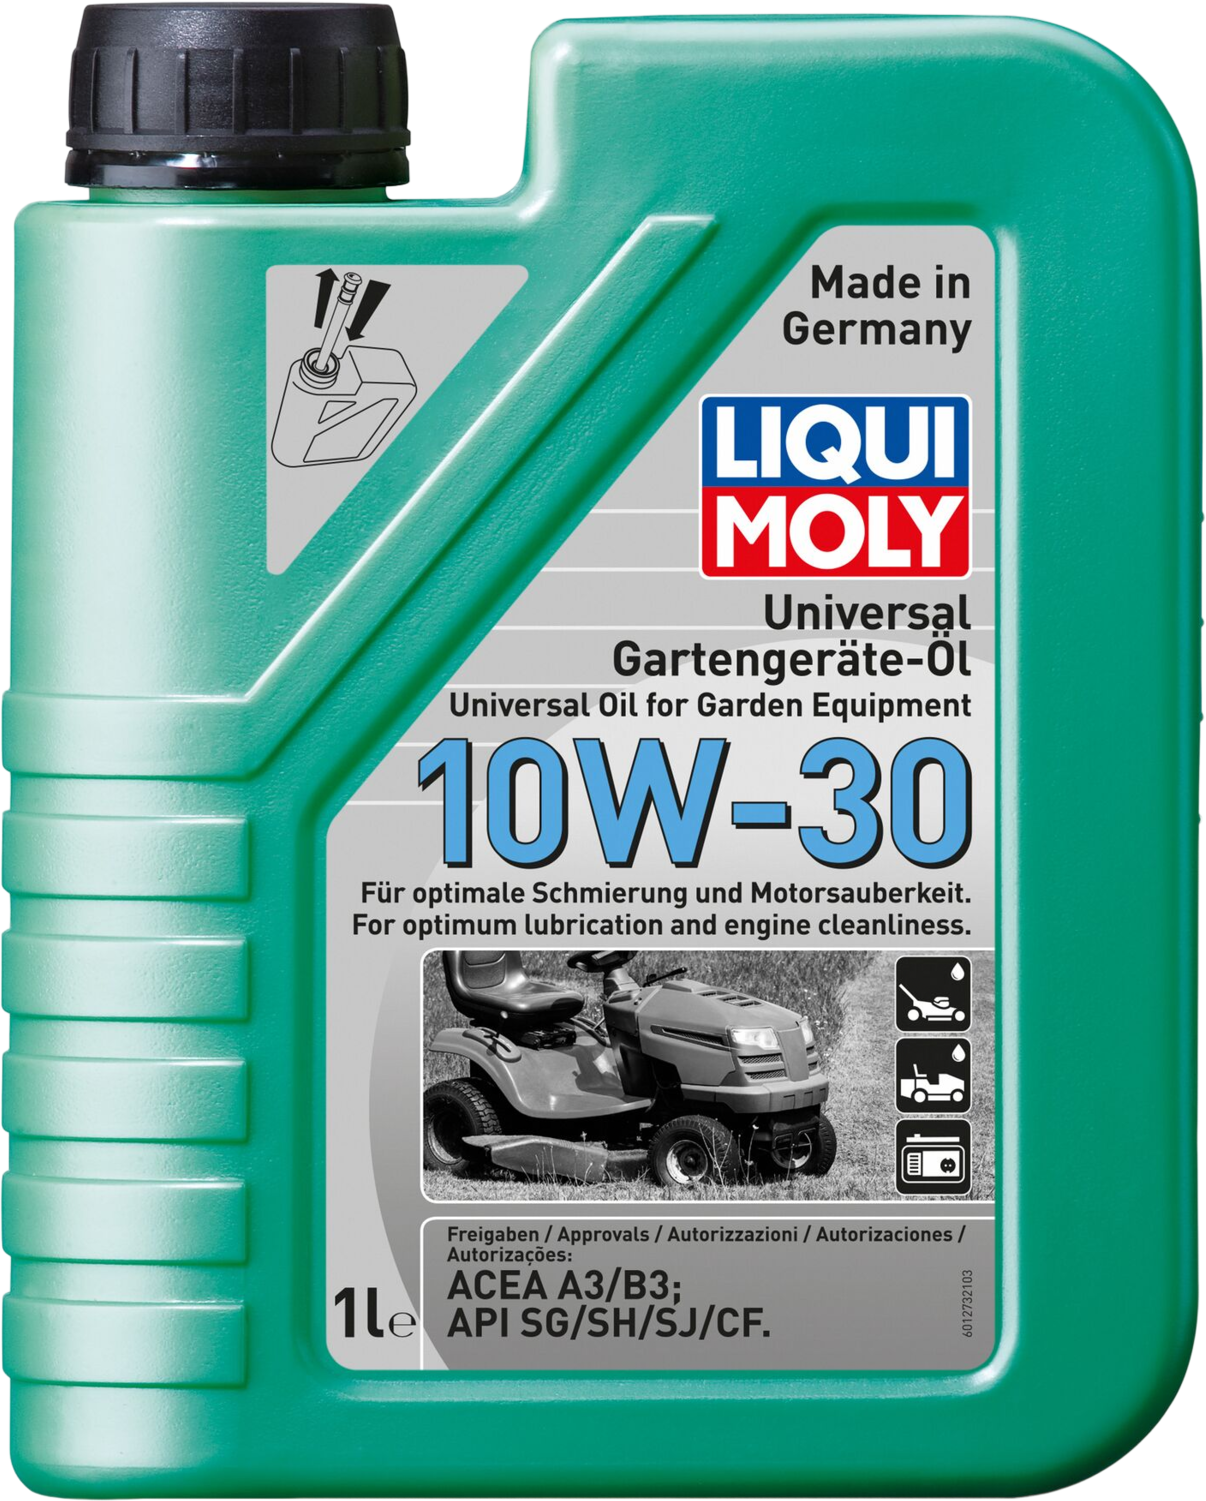 Liqui Moly Universele olie voor tuingereedschap 10W-30, 6 x 1 lt detail 2